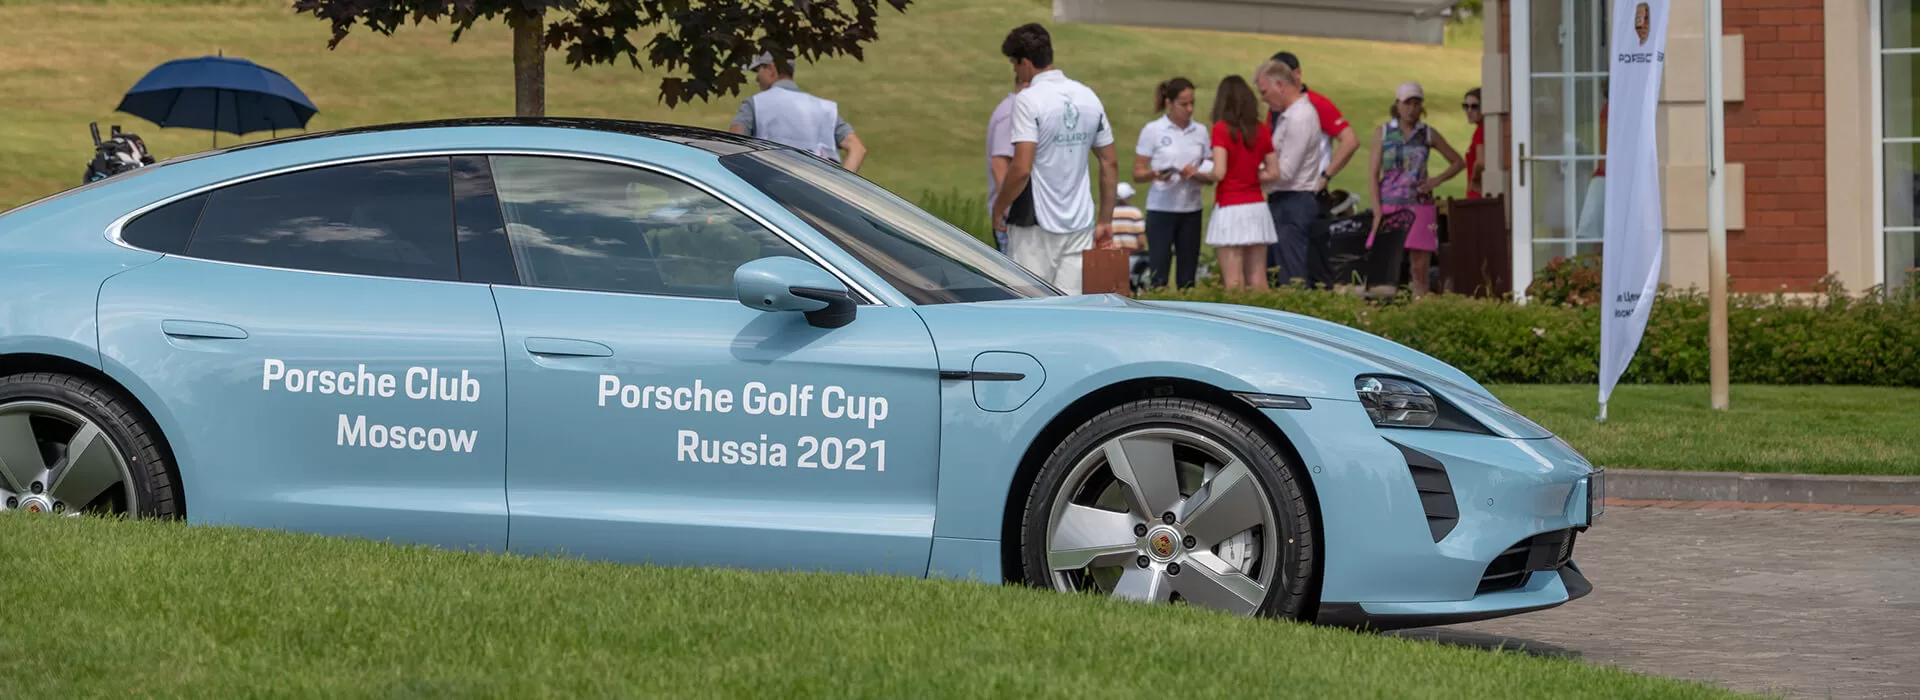 Porsche Golf Cup. Спорт как поэзия.